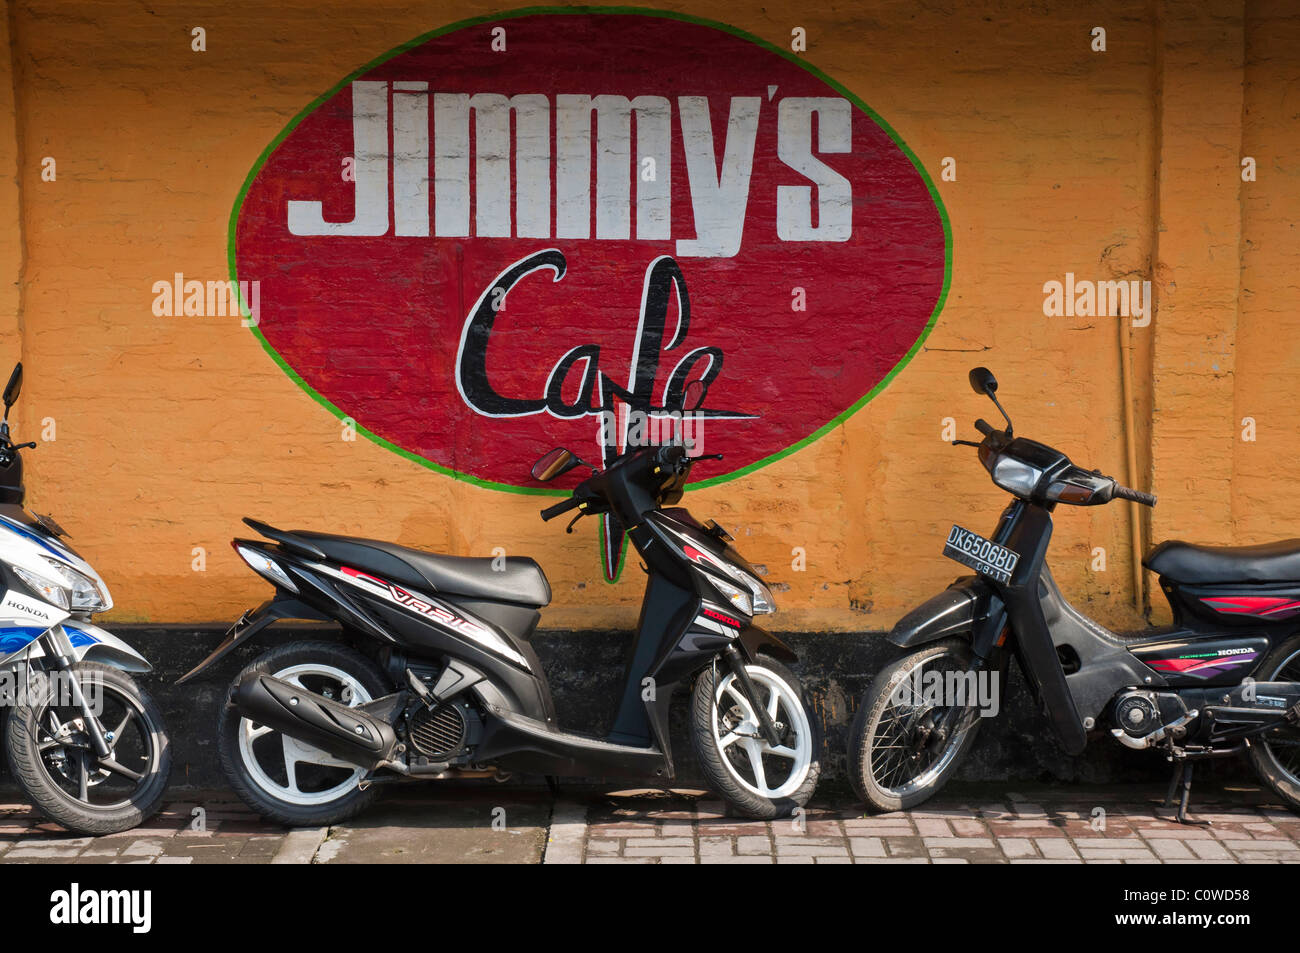 Les scooters garés outiside bar bien connu Jimmy's Cafe à Sanur Bali Indonésie Banque D'Images